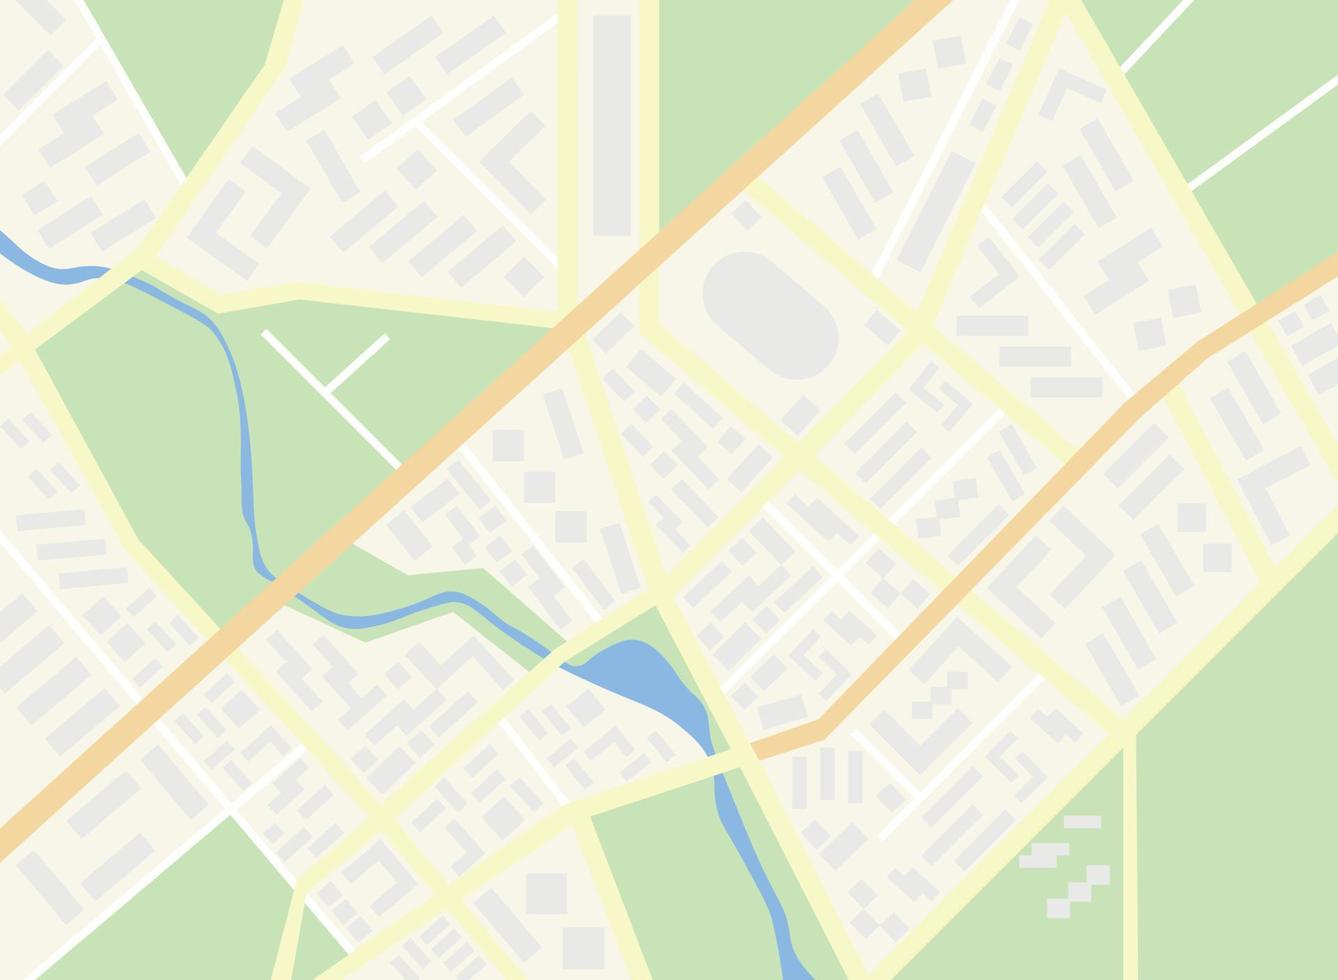 vektor karta över staden, bakgrund för animering, navigeringskarta